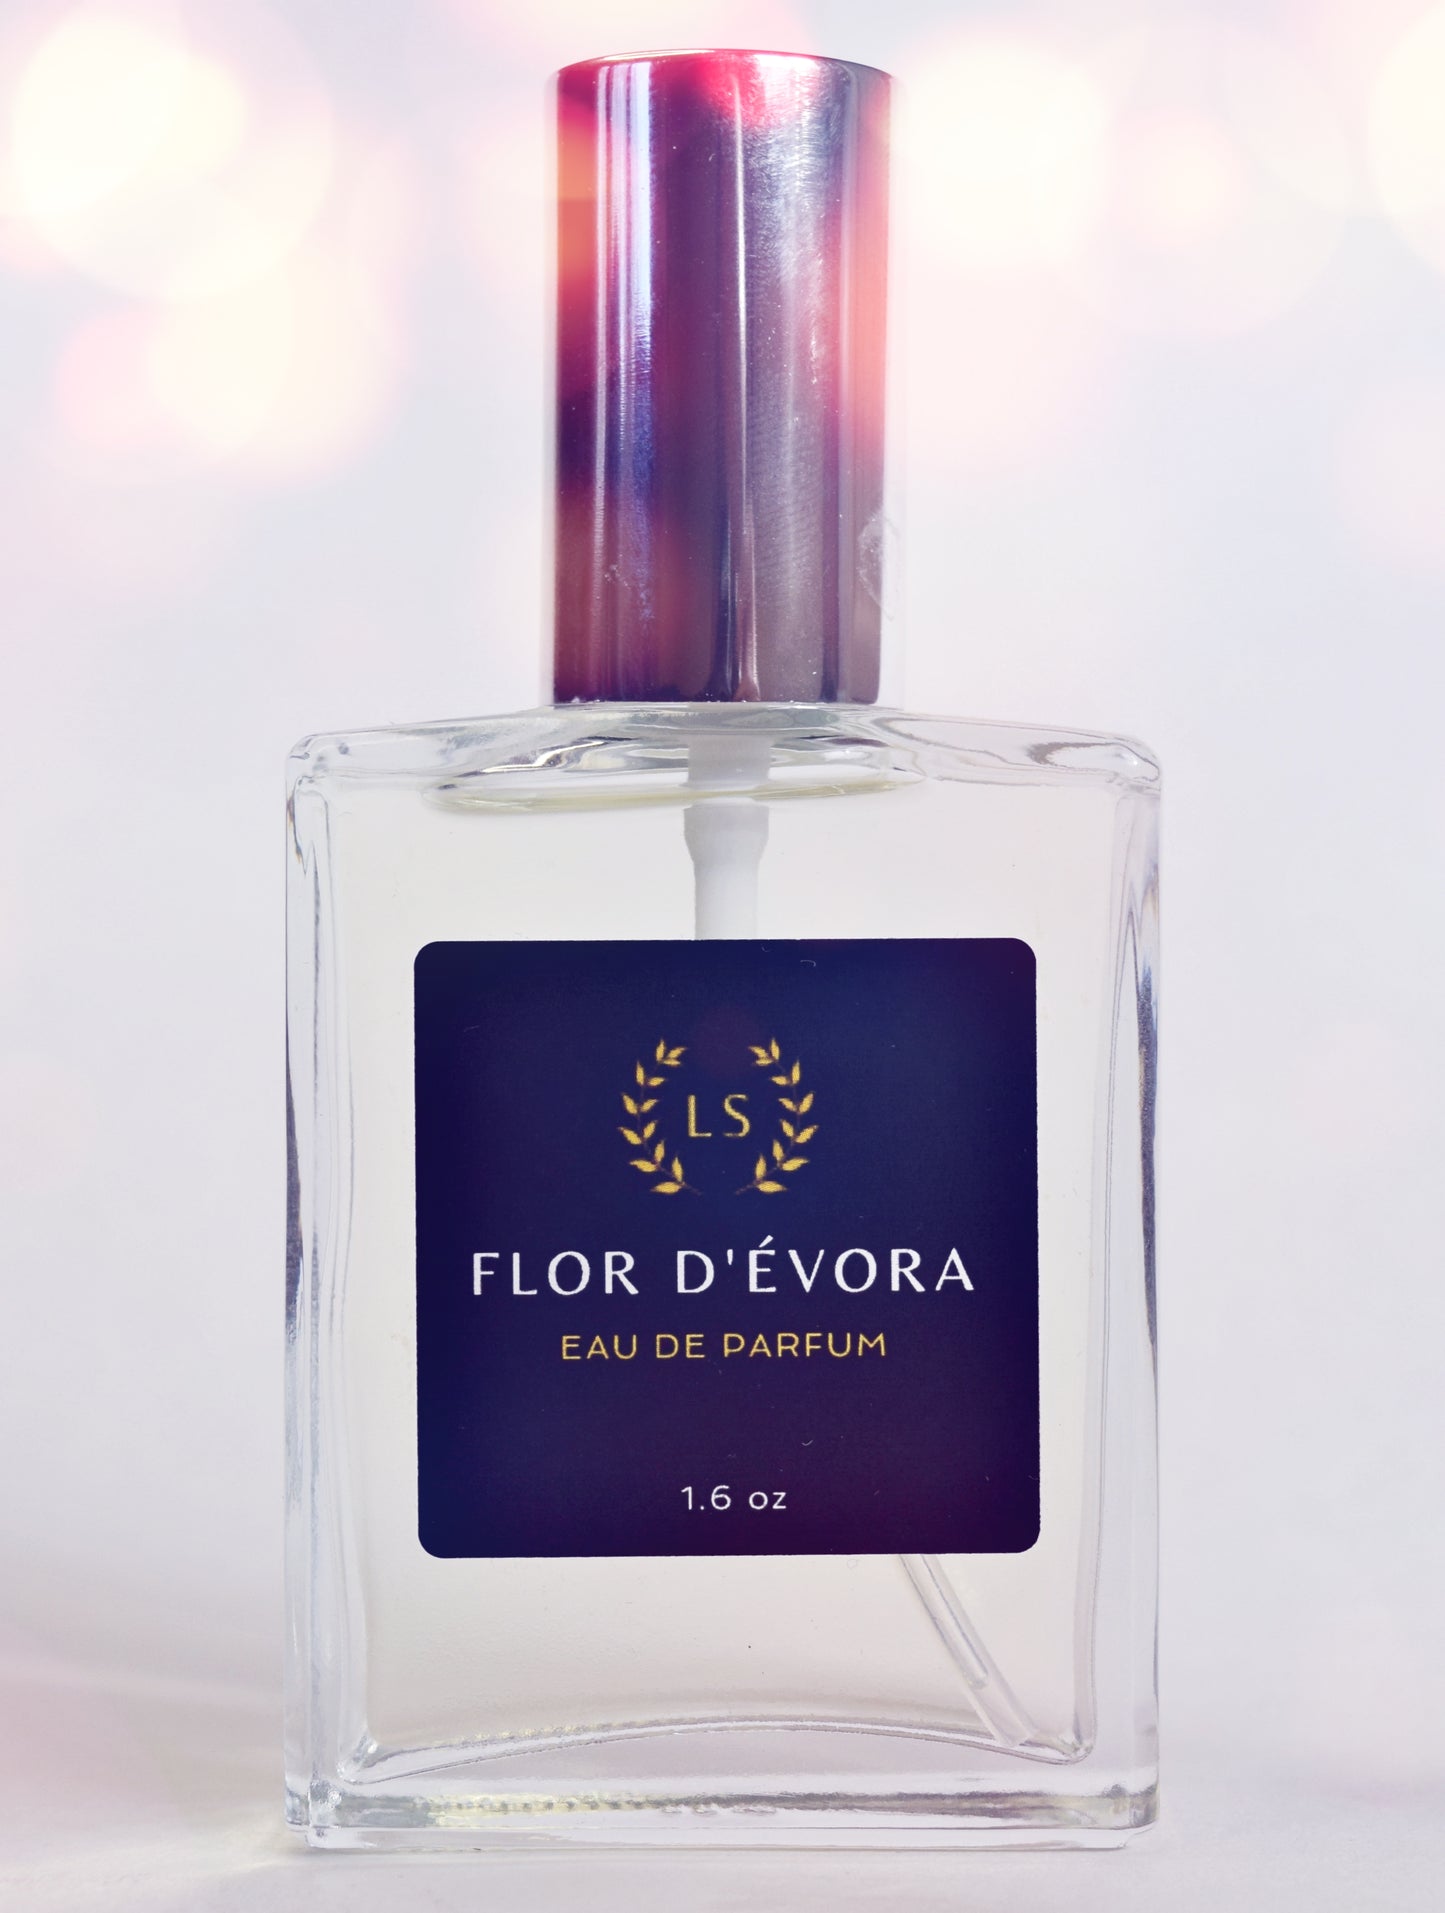 Eau de Parfum Flor D'Évora - Rosewood, Lily, Amber, Sandalwood for Sensual Floral Long Lasting Aromas